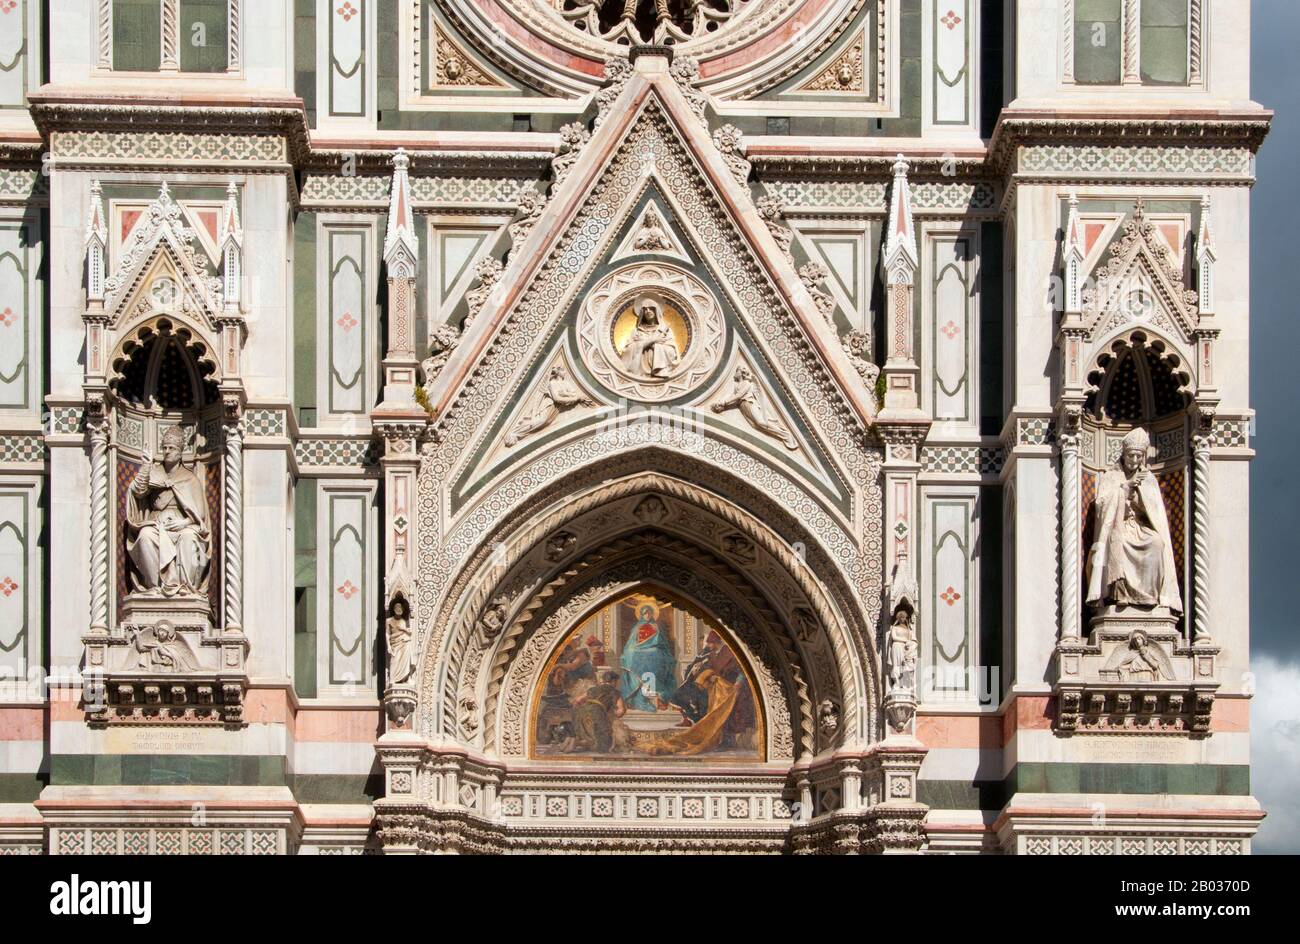 La Cattedrale di Santa Maria del Fiore (Catedral de Santa María de las Flores) es la iglesia principal de Florencia. Il Duomo di Firenze, como se suele llamar, se inició en 1296 en el estilo gótico con el diseño de Arnolfo di Cambio y se completó estructuralmente en 1436 con la cúpula diseñada por Filippo Brunelleschi. El exterior de la basílica está frente a paneles de mármol policromado en varios tonos de verde y rosa bordeados por el blanco y tiene una elaborada fachada gótica del siglo XIX de Emilio de Fabris. El complejo de la catedral, situado en la Piazza del Duomo, incluye el Baptisterio A. Foto de stock